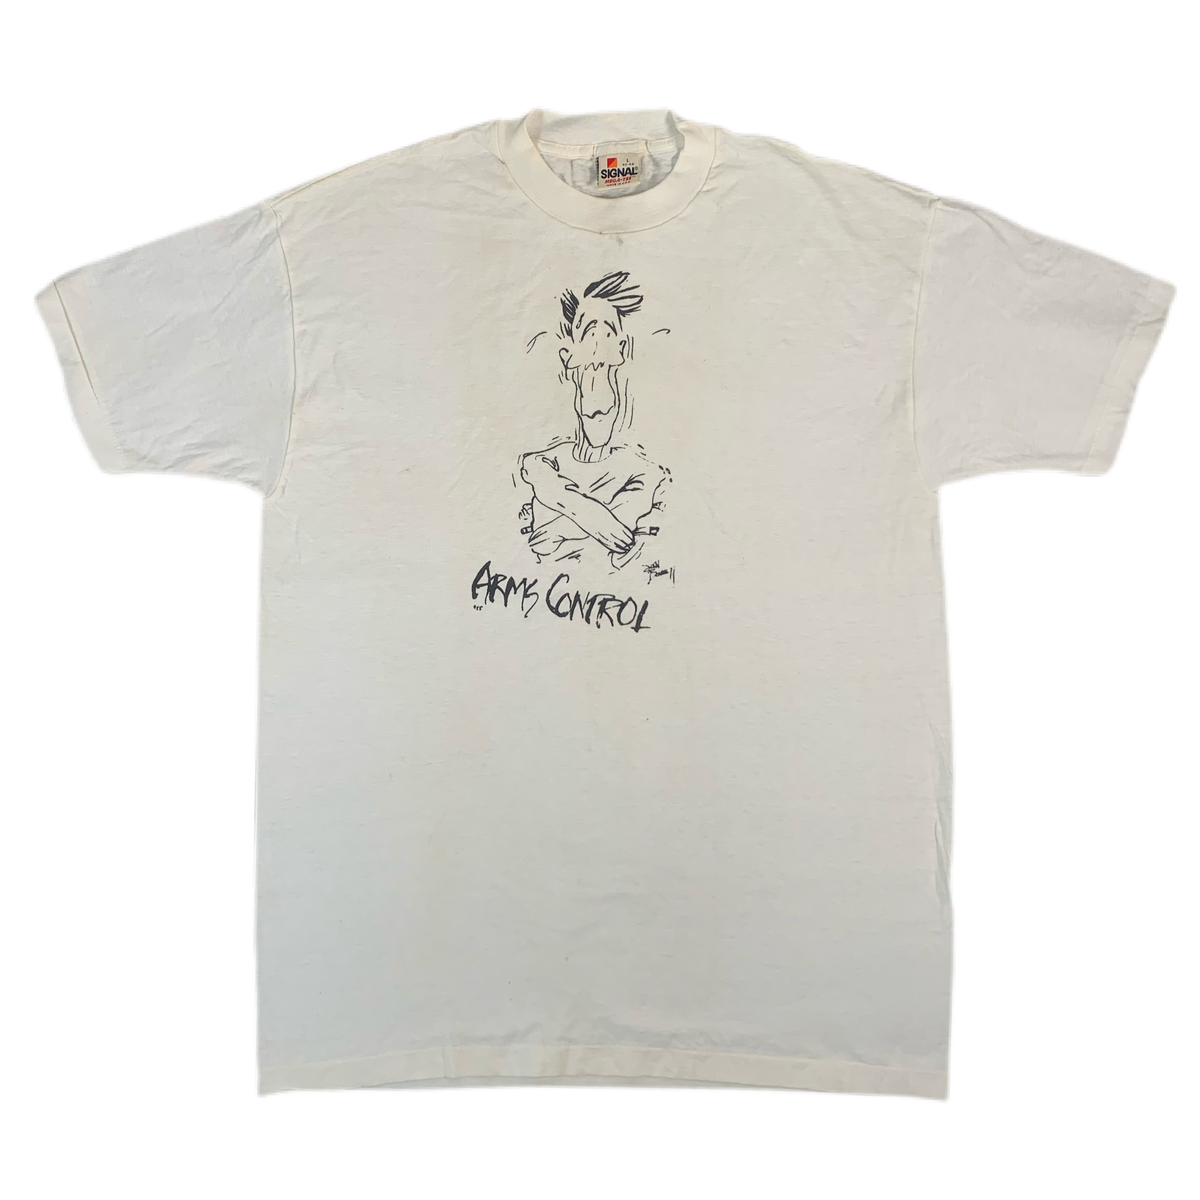 Vintage Ronald Reagan “Arms Control” T-Shirt | jointcustodydc